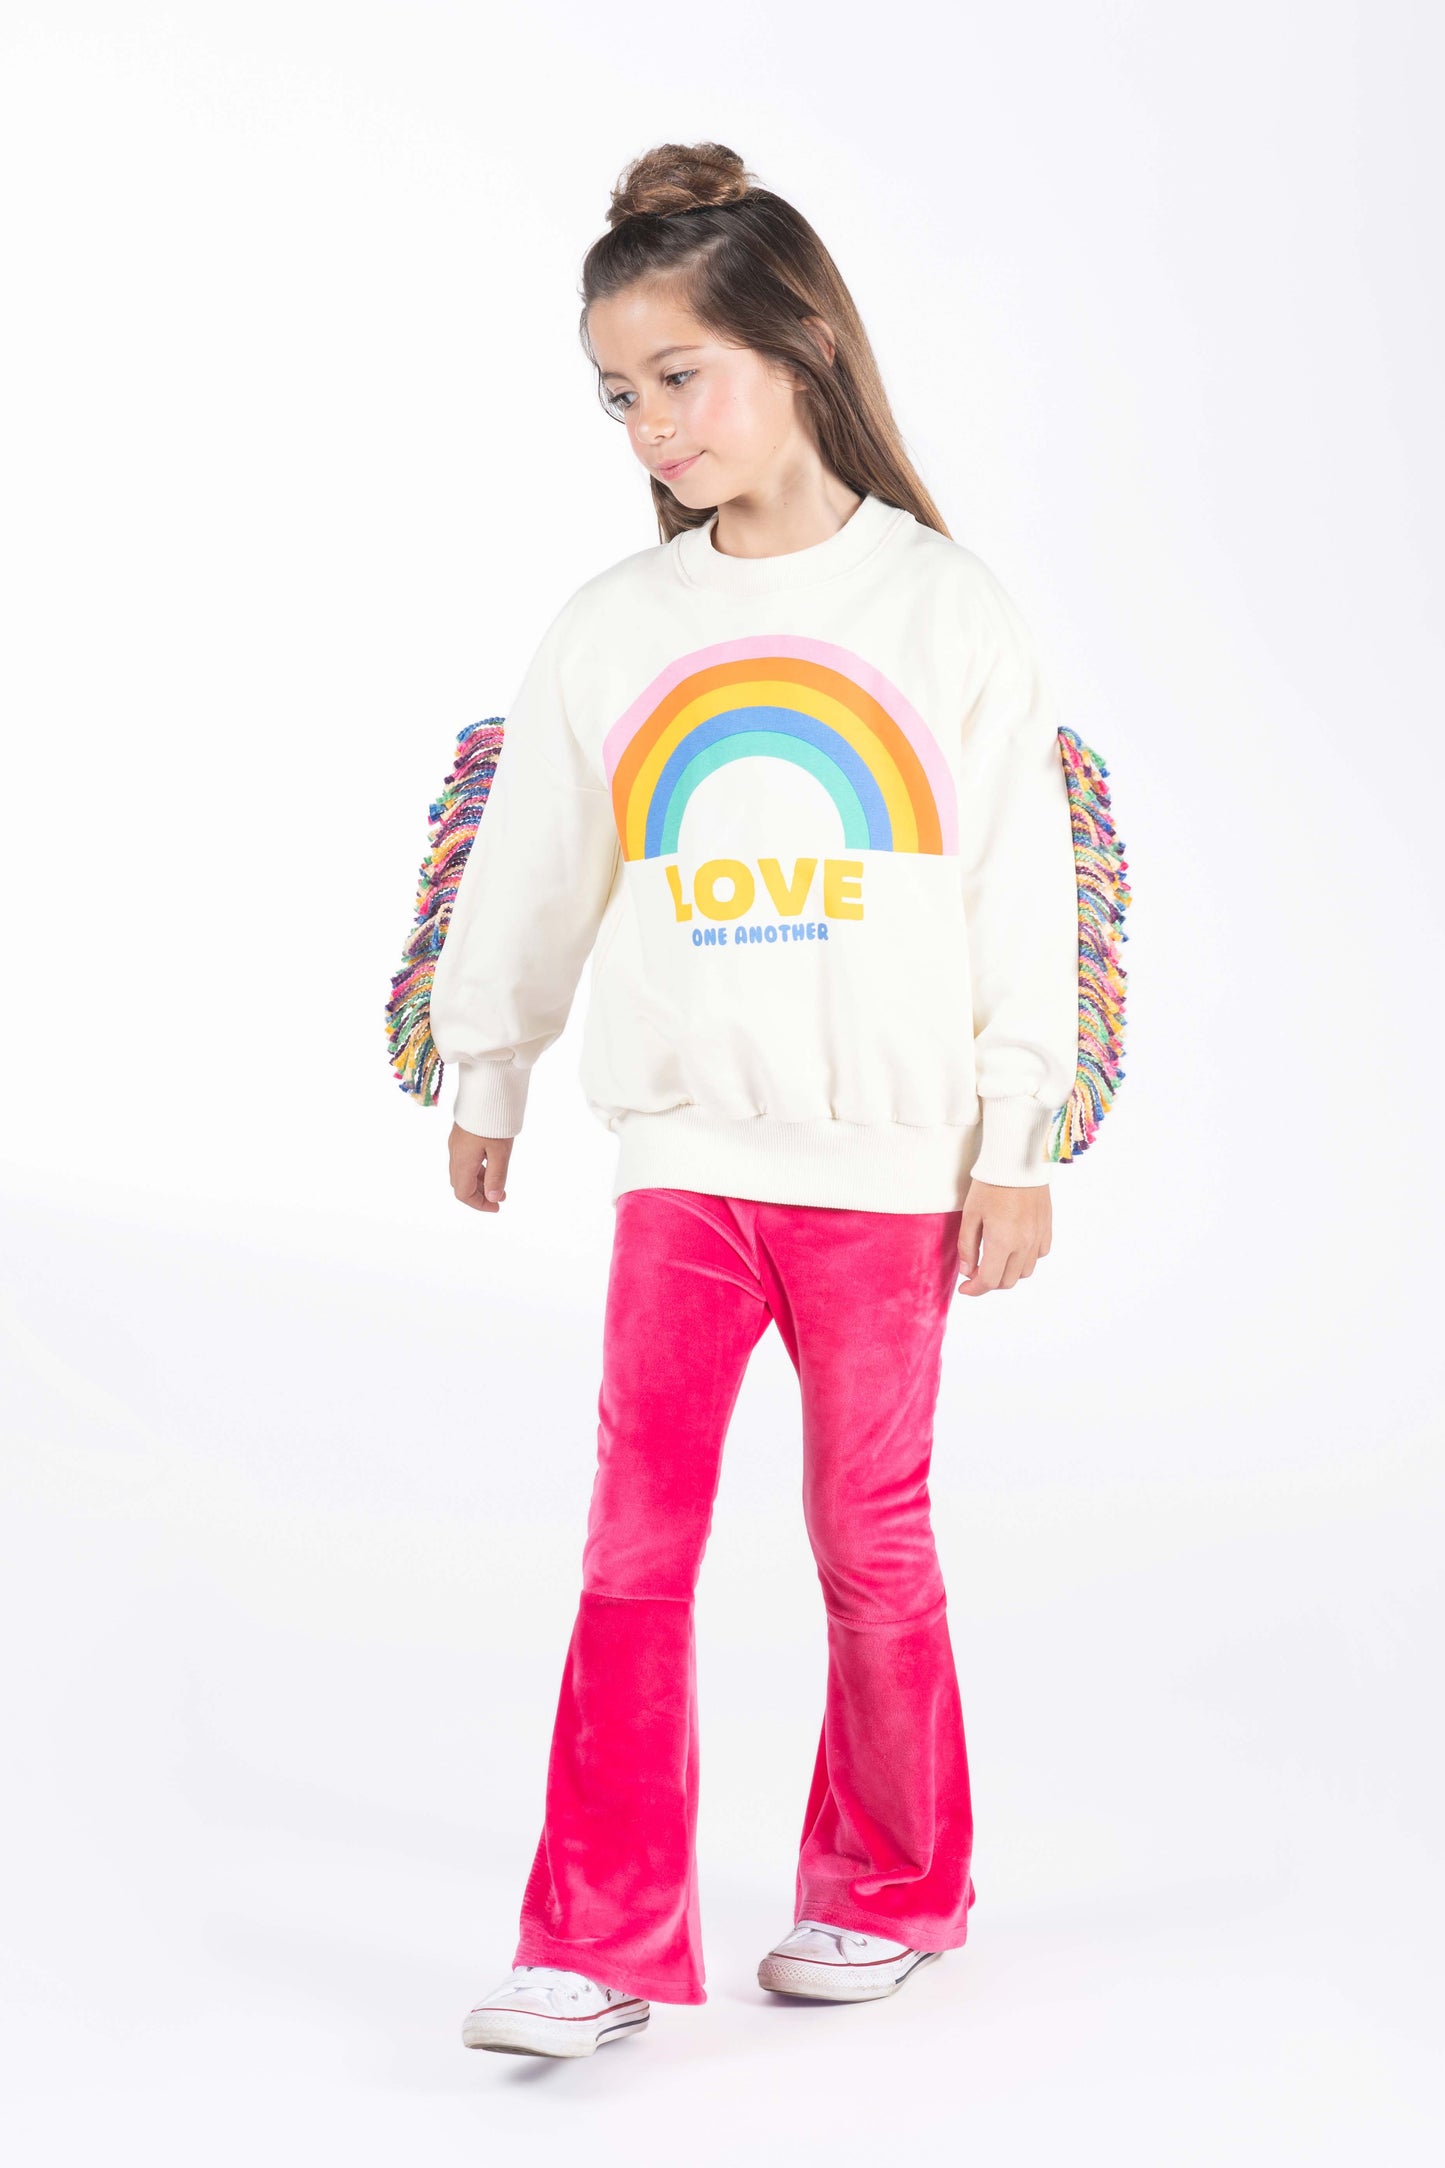 Rock Your Kid Love One Another Sweatshirt